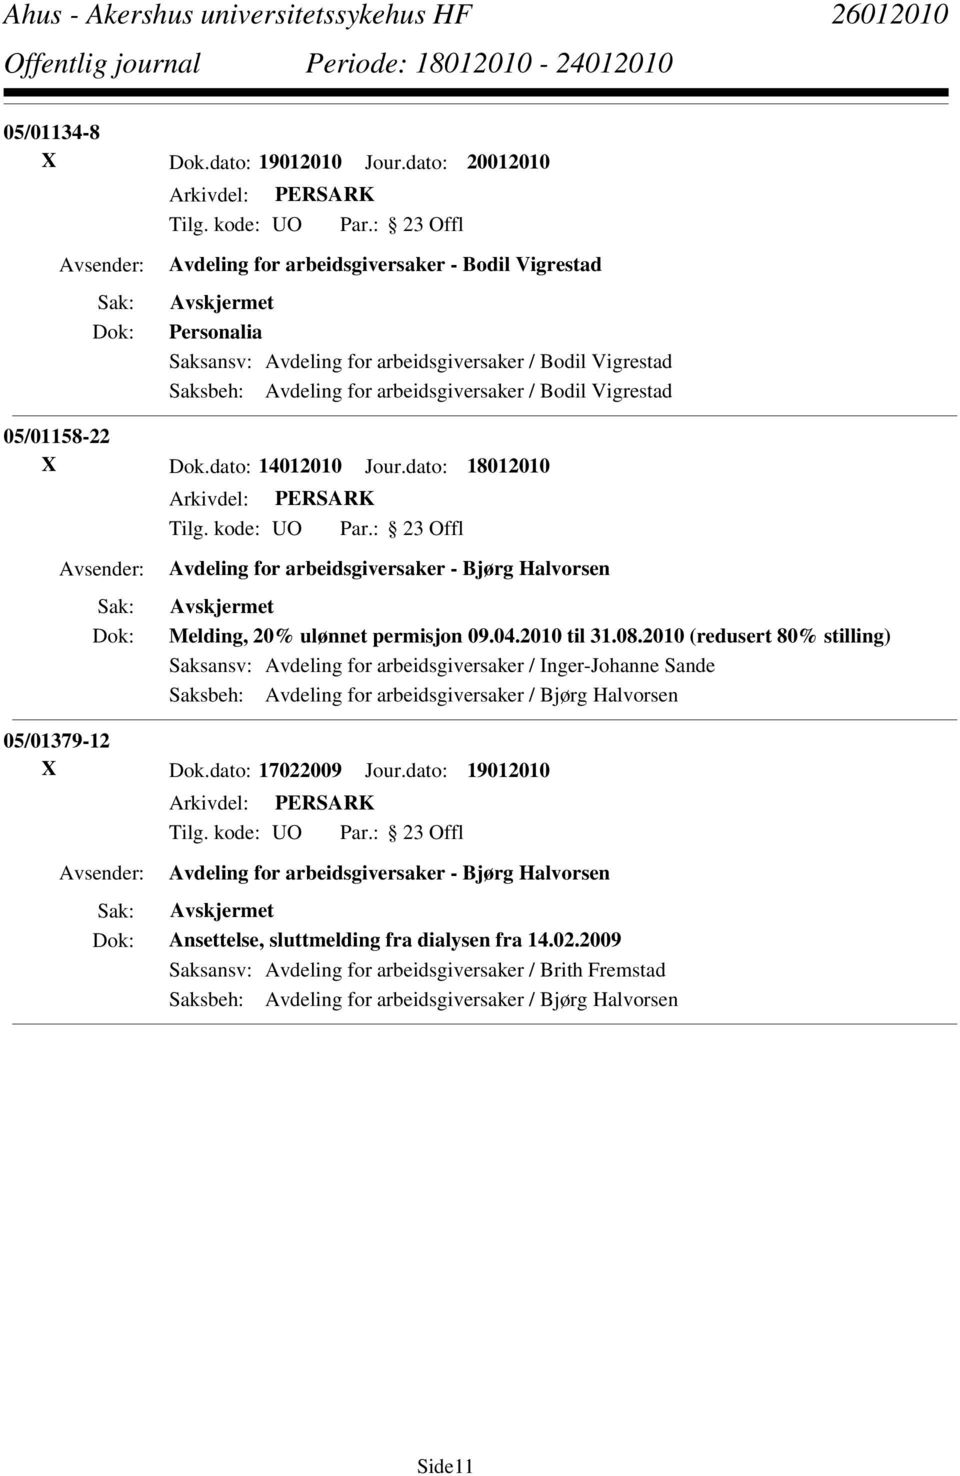 05/01158-22 X Dok.dato: 14012010 Jour.dato: 18012010 Avdeling for arbeidsgiversaker - Bjørg Halvorsen Melding, 20% ulønnet permisjon 09.04.2010 til 31.08.